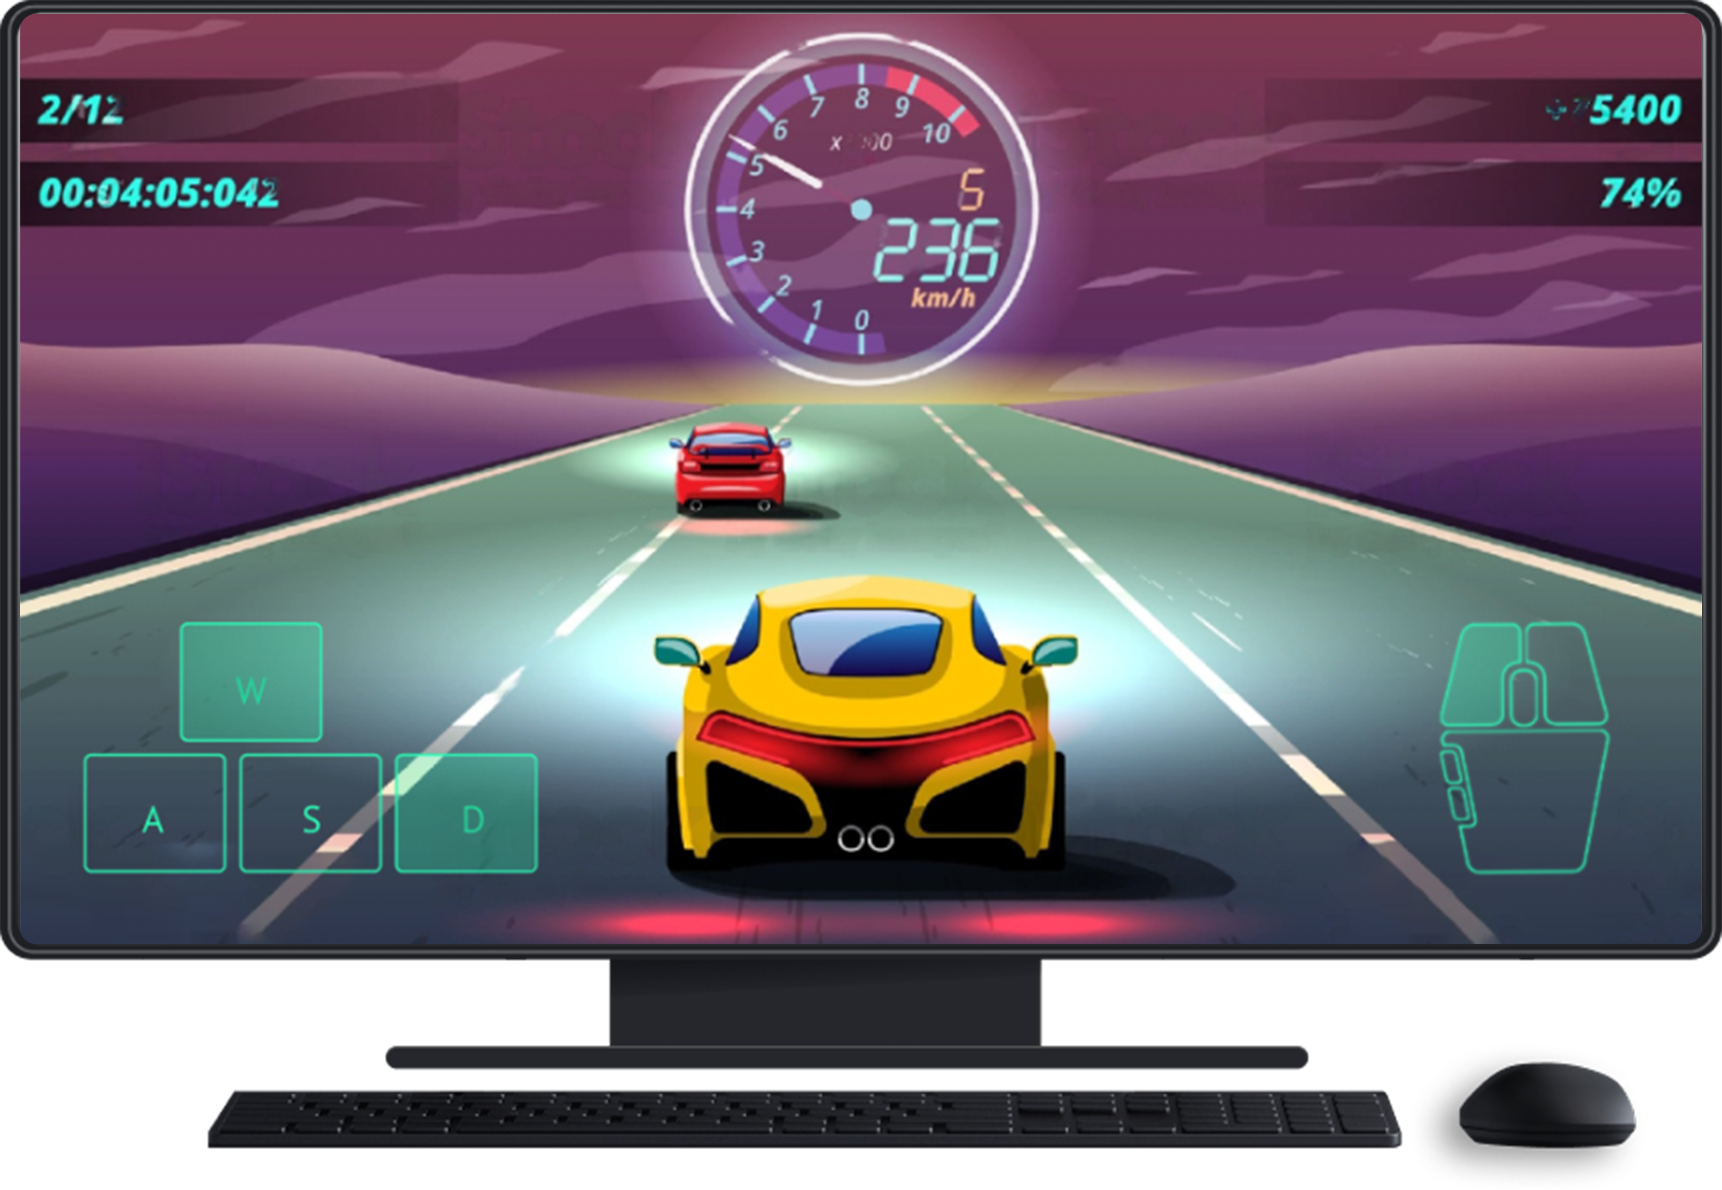 配有键盘和鼠标的桌面设备。屏幕上显示游戏，显示了用于方向控制和鼠标的触摸屏输入。